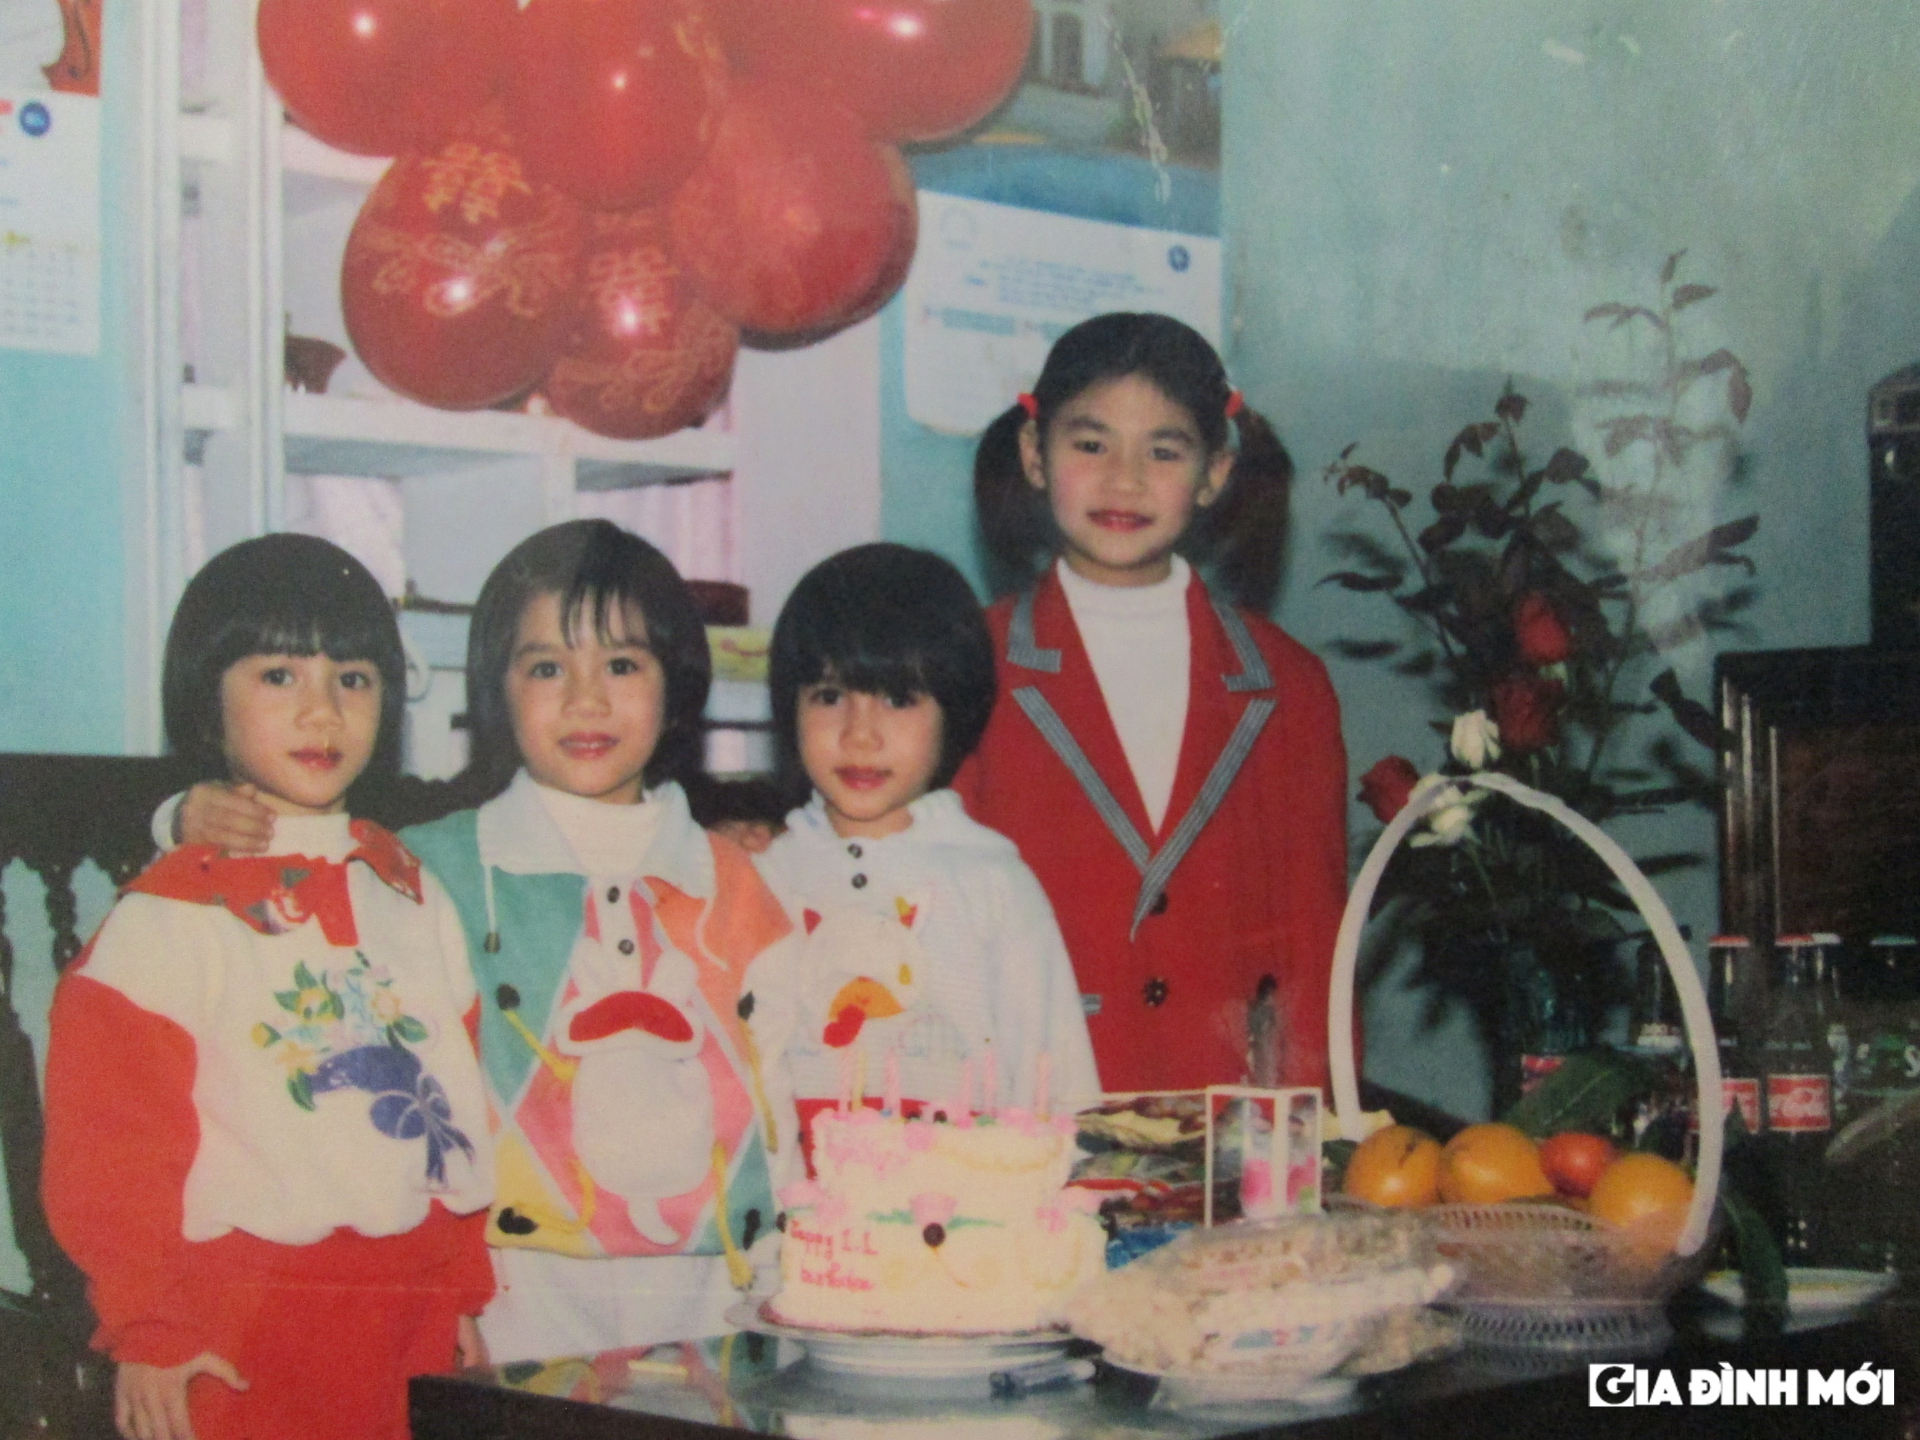 3 chị em theo thứ tự từ phải sang trái: Ái Linh (chị cả), Khánh Linh (em thứ 2), Mỹ Linh (em út).